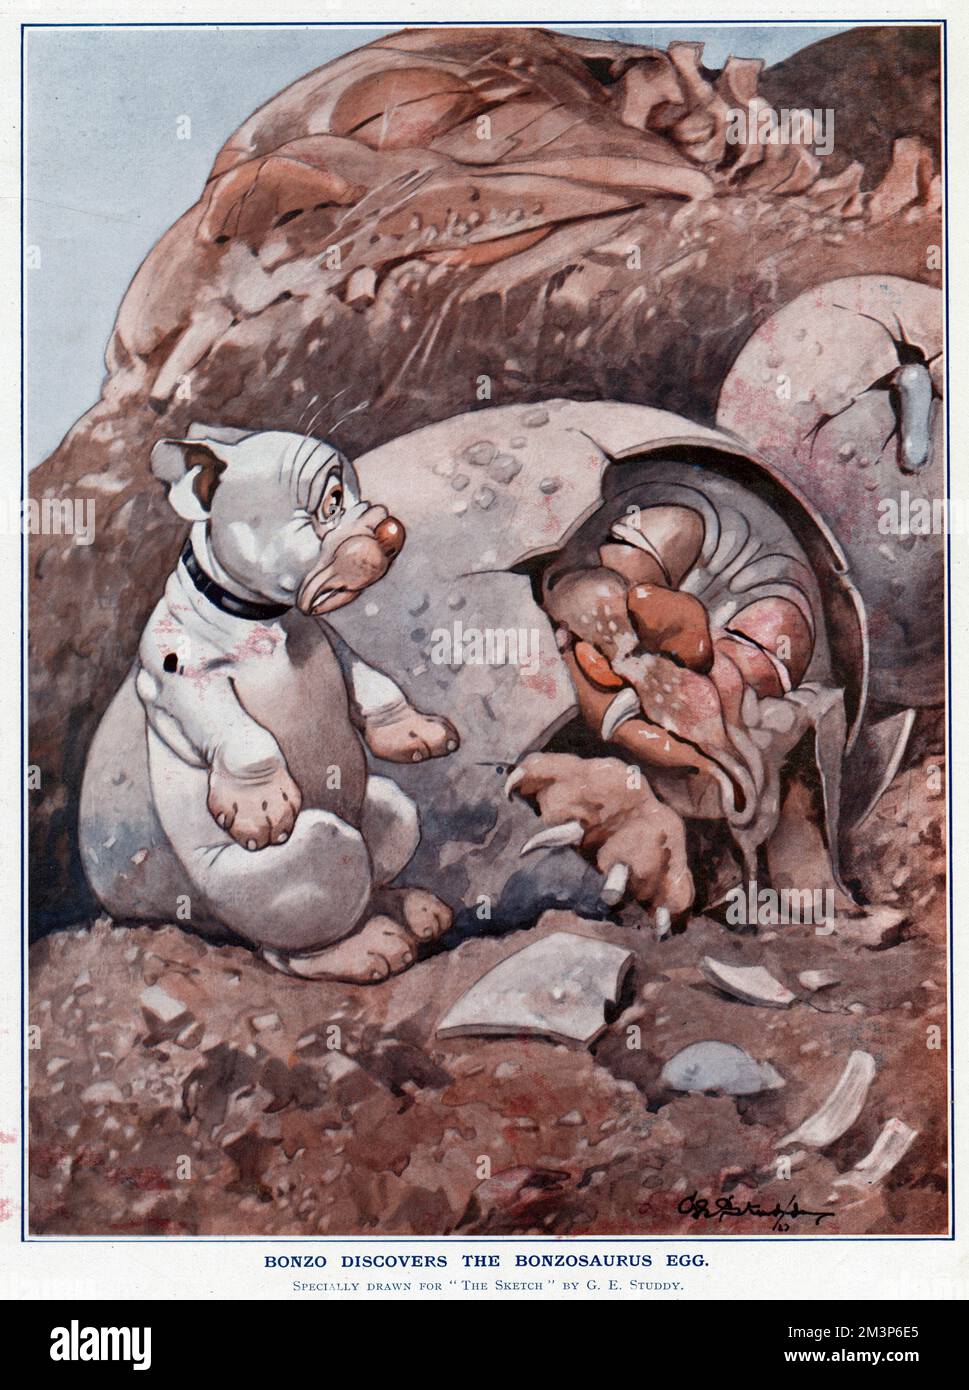 Bonzo scopre l'uovo di Bonzosauro - chiaramente un antenato di epoca preistorica! Data: 1924 Foto Stock